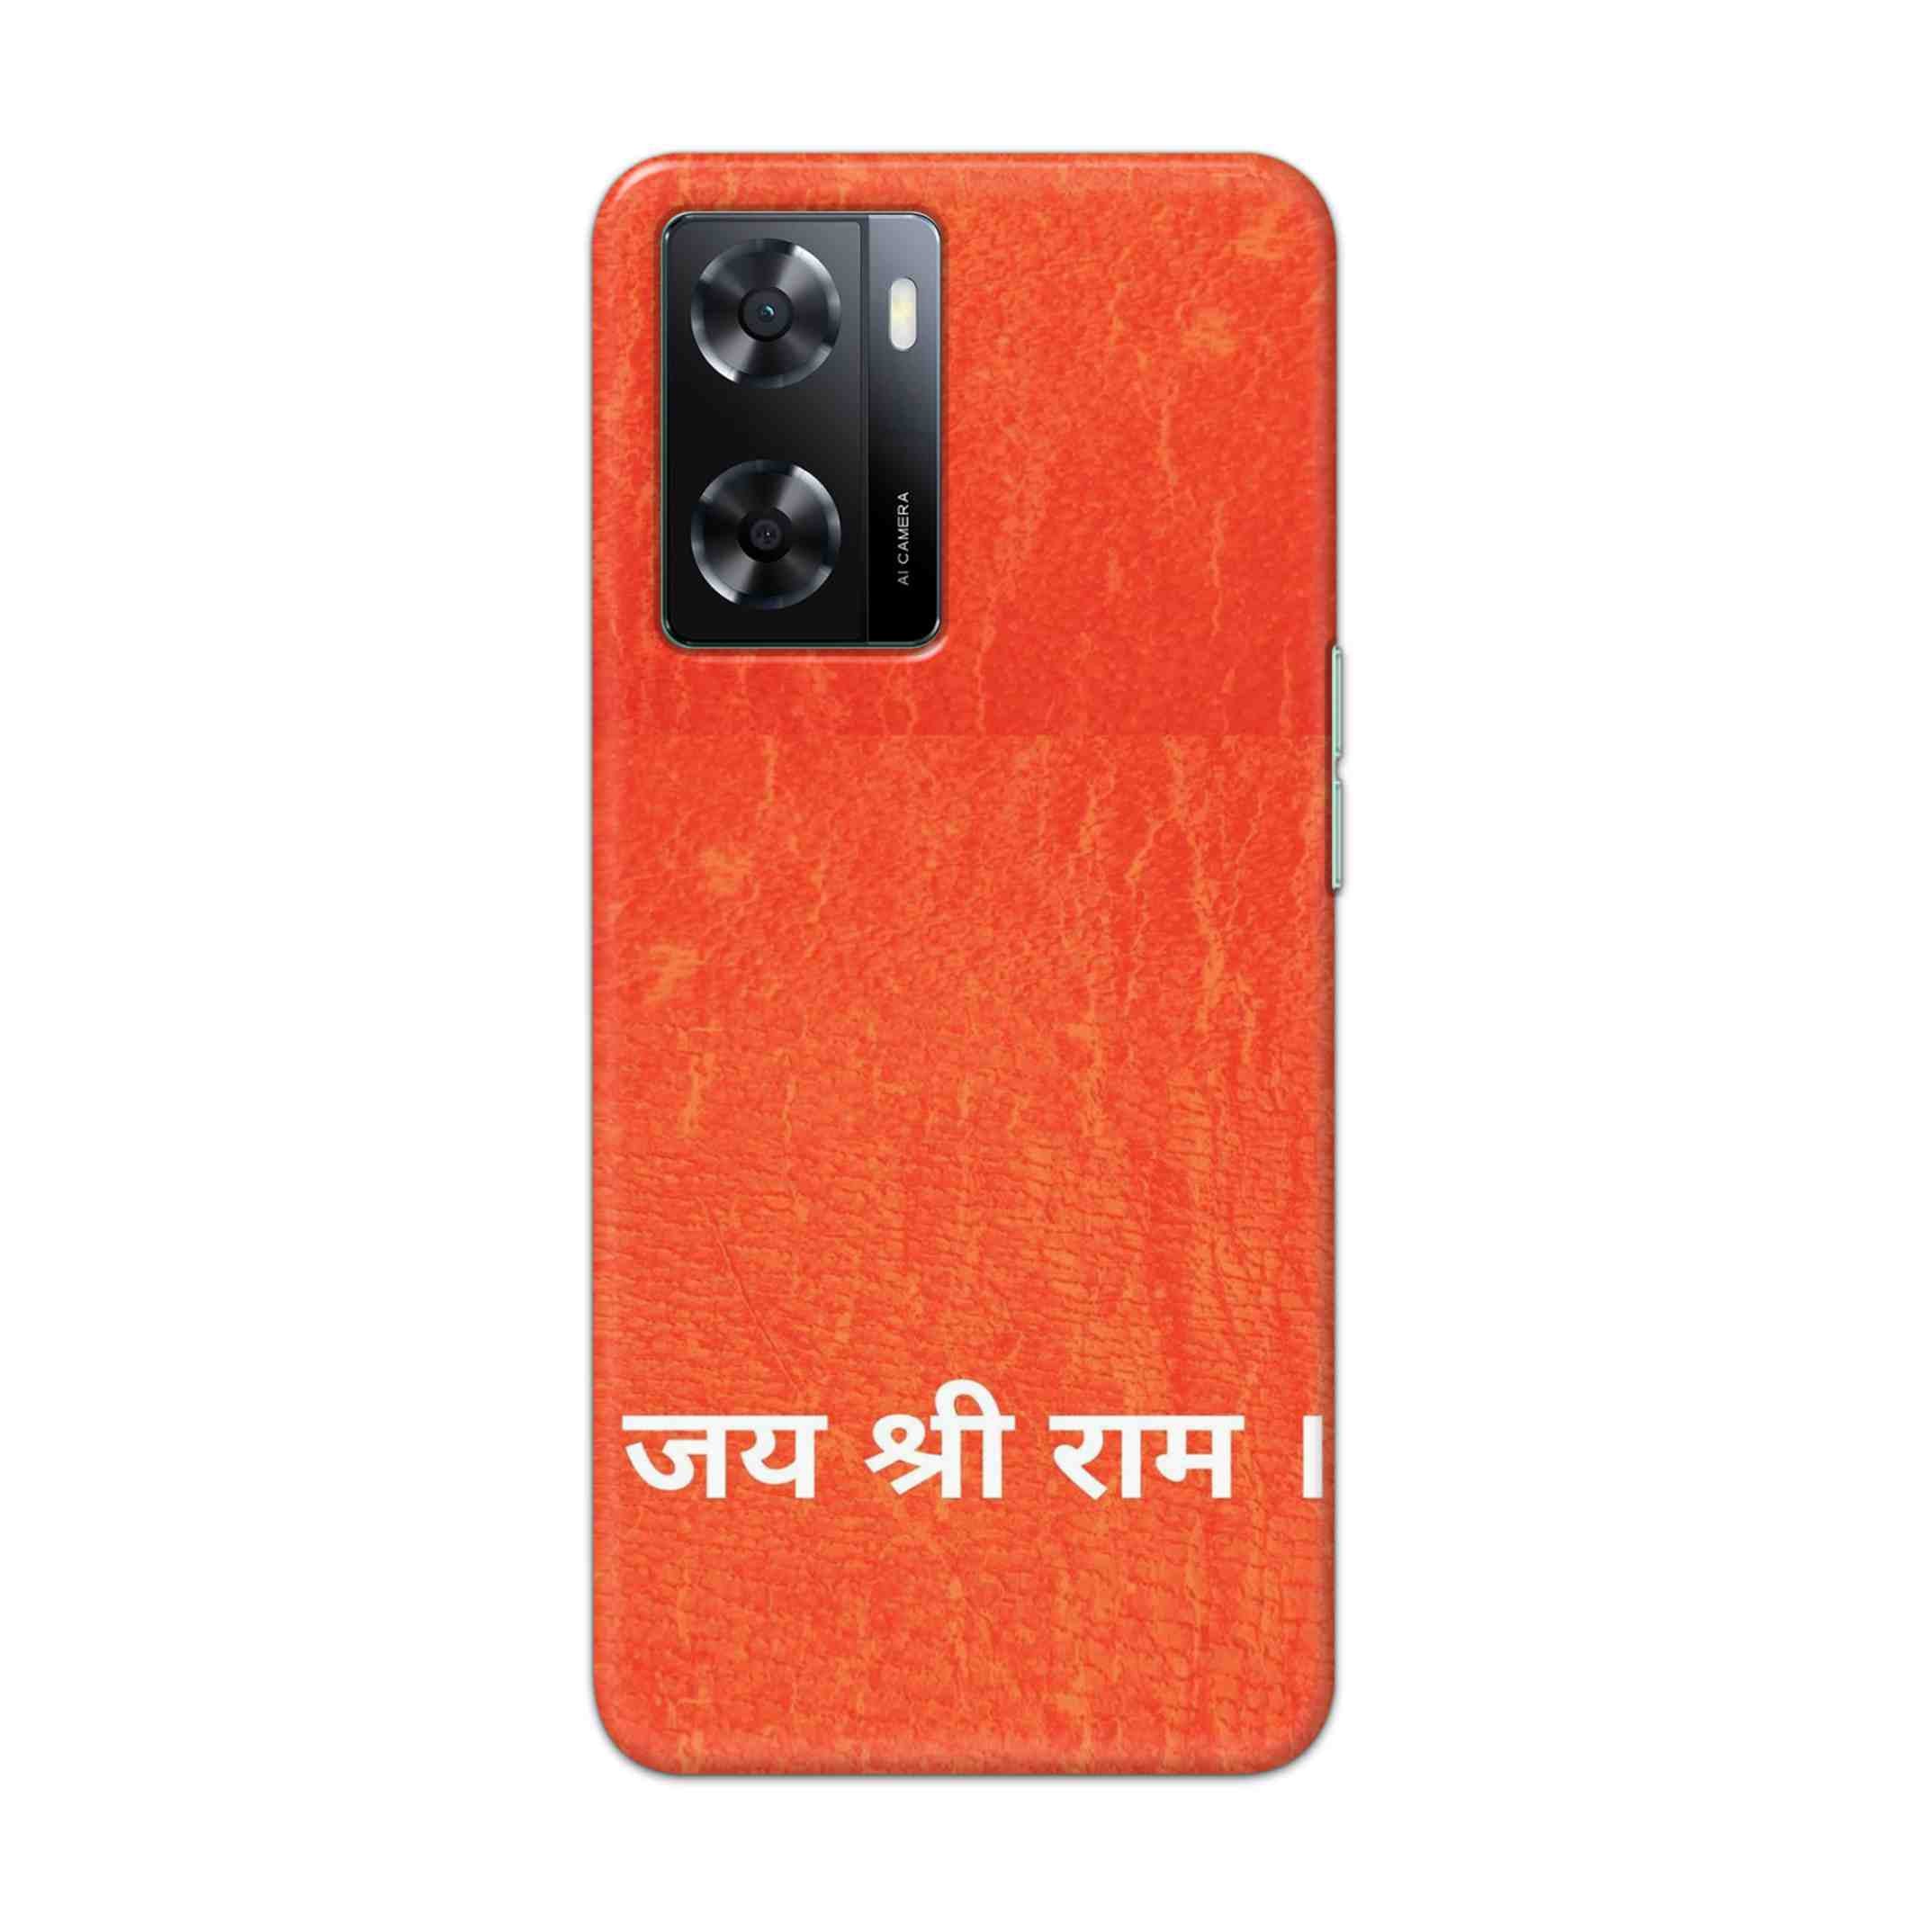 Buy Jai Shree Ram Hard Back Mobile Phone Case Cover For OPPO A57 2022 Online